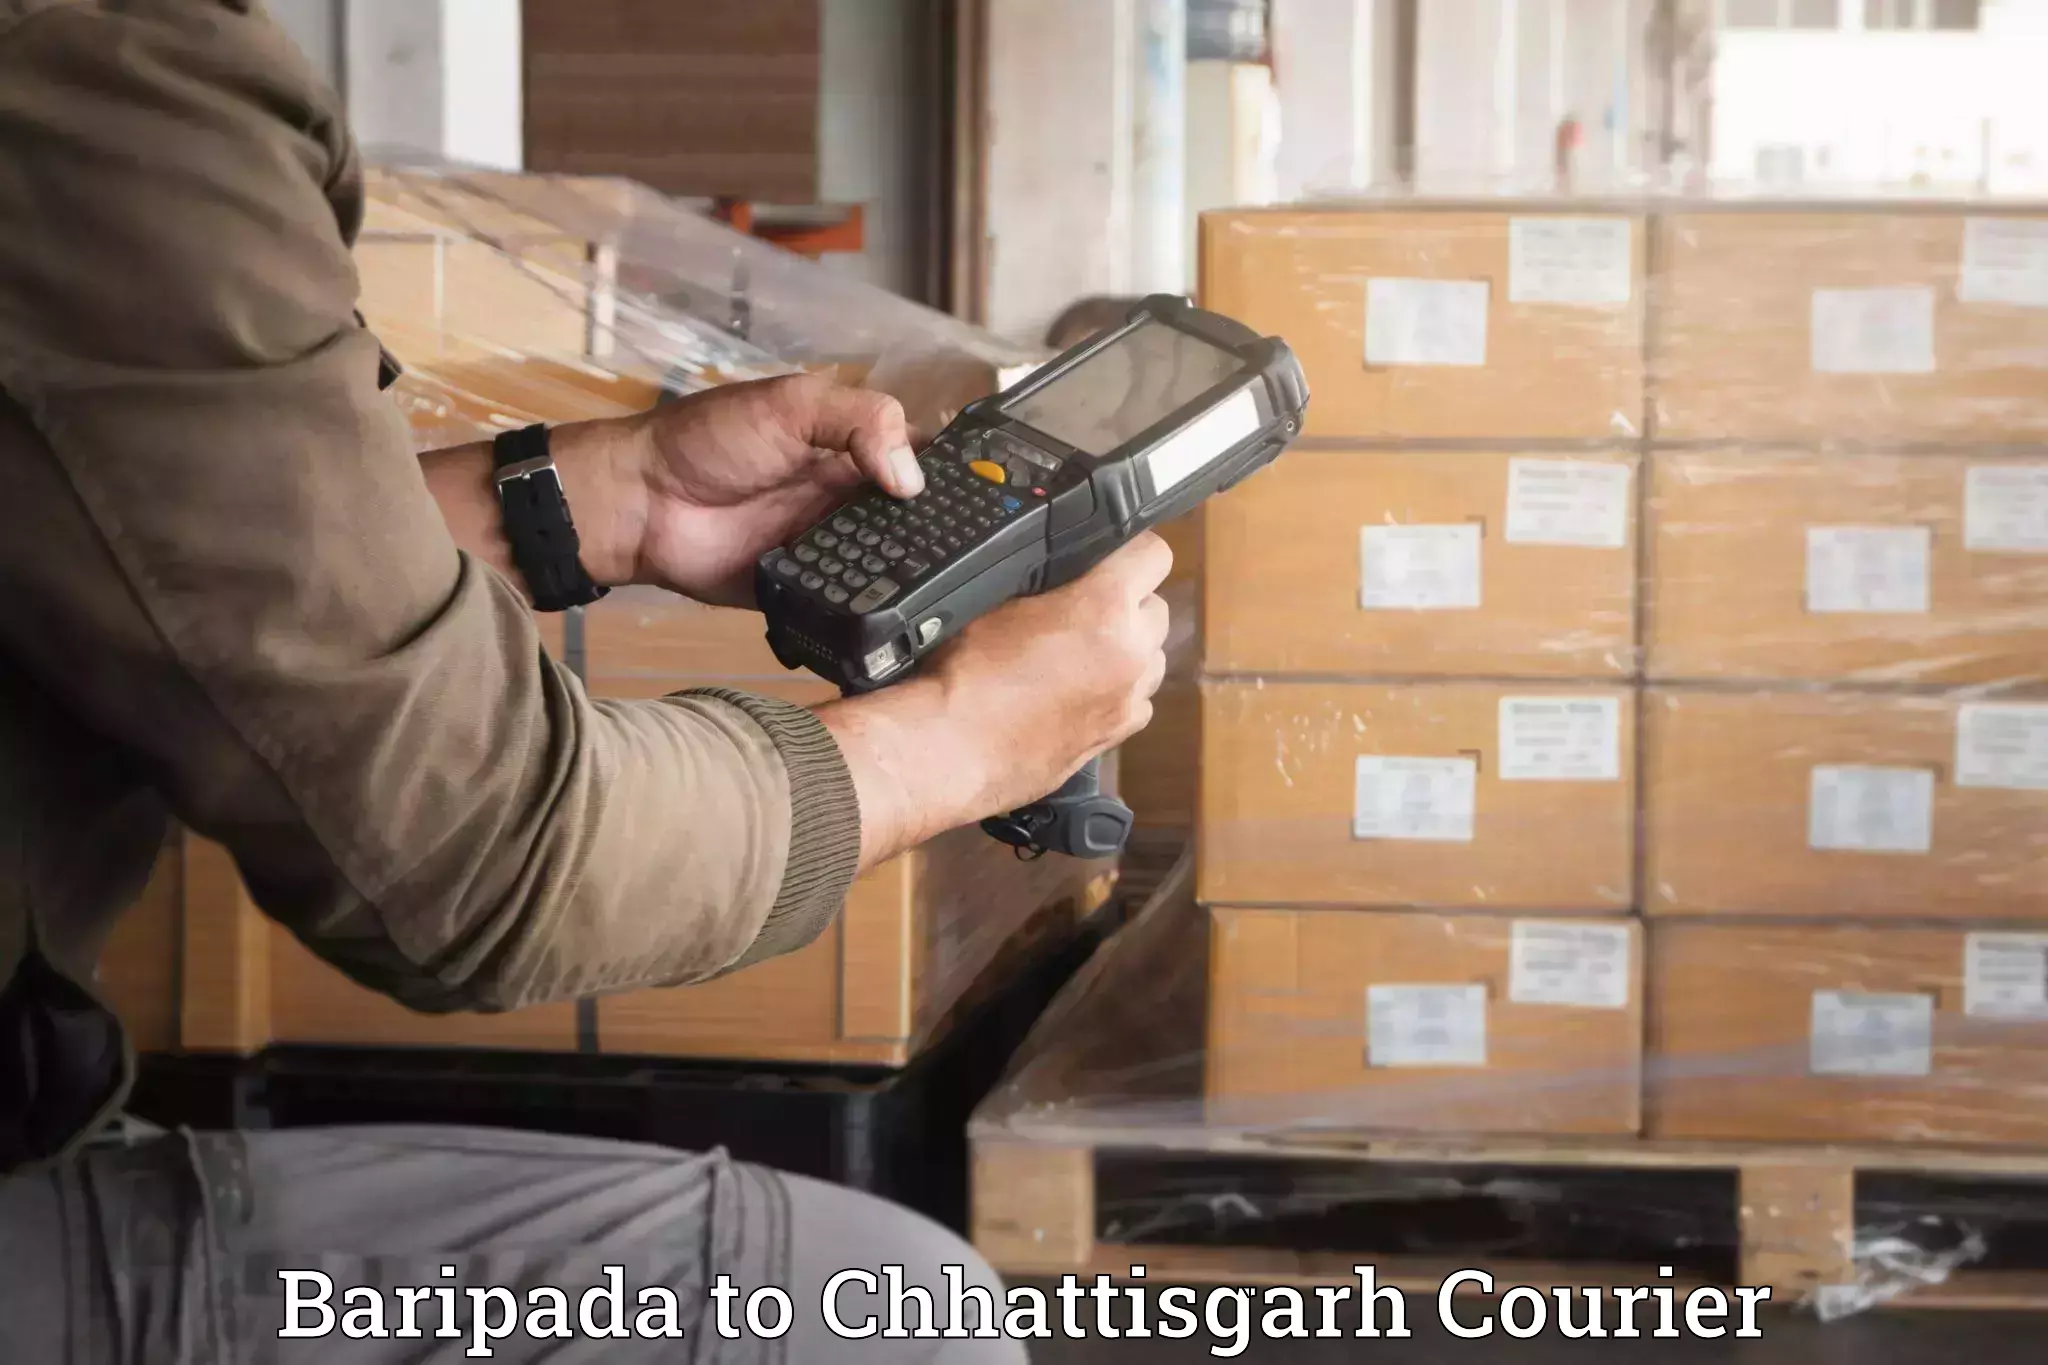 Professional furniture movers in Baripada to Dantewada